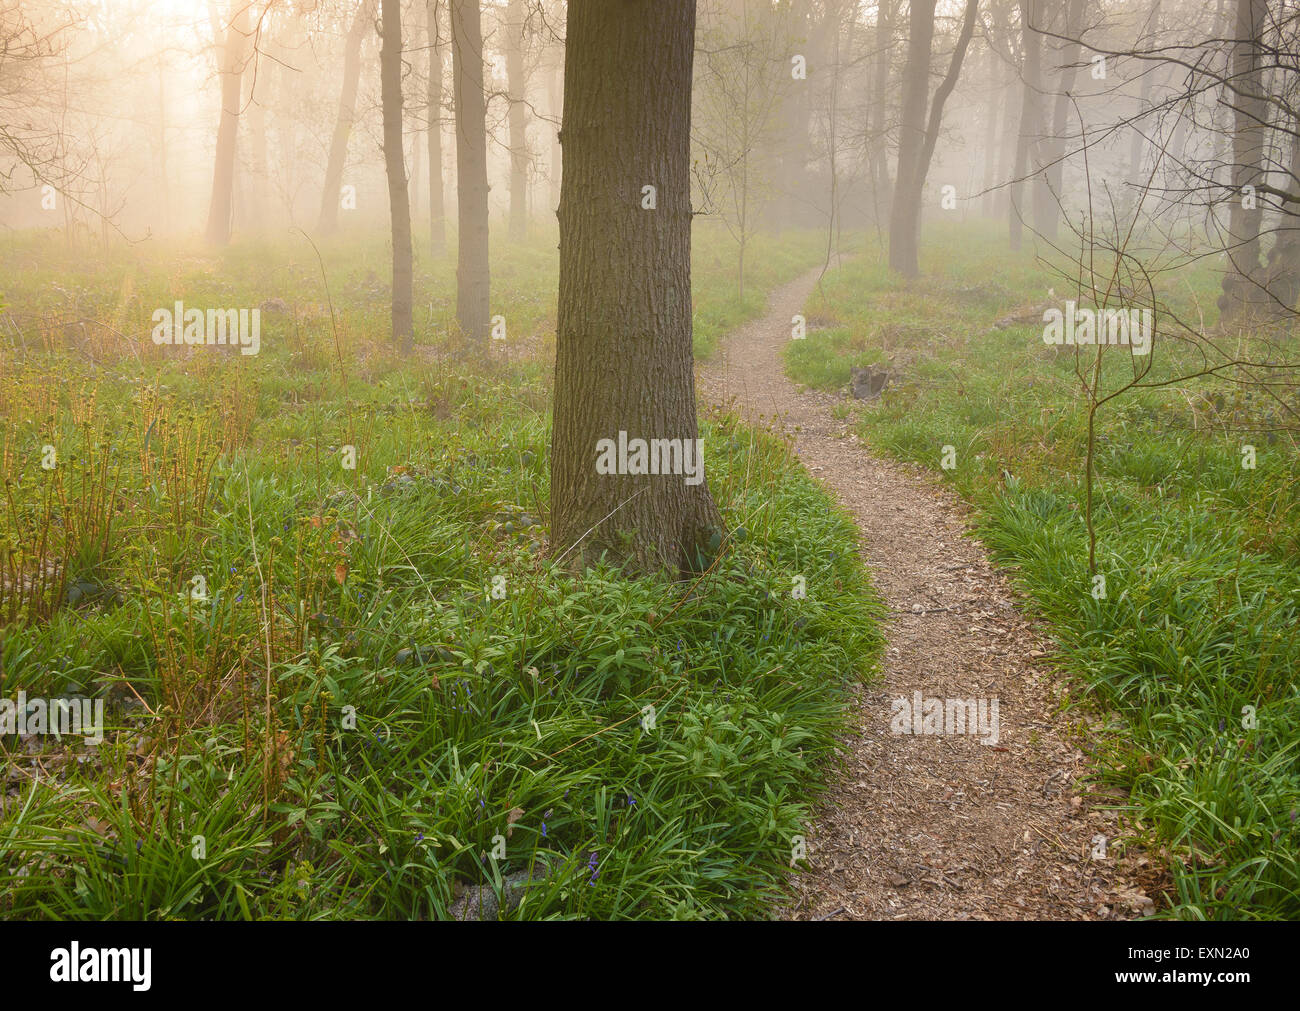 Immagine da sogno di un sentiero nella foresta durante un sunrise su una mattinata nebbiosa. Foto Stock